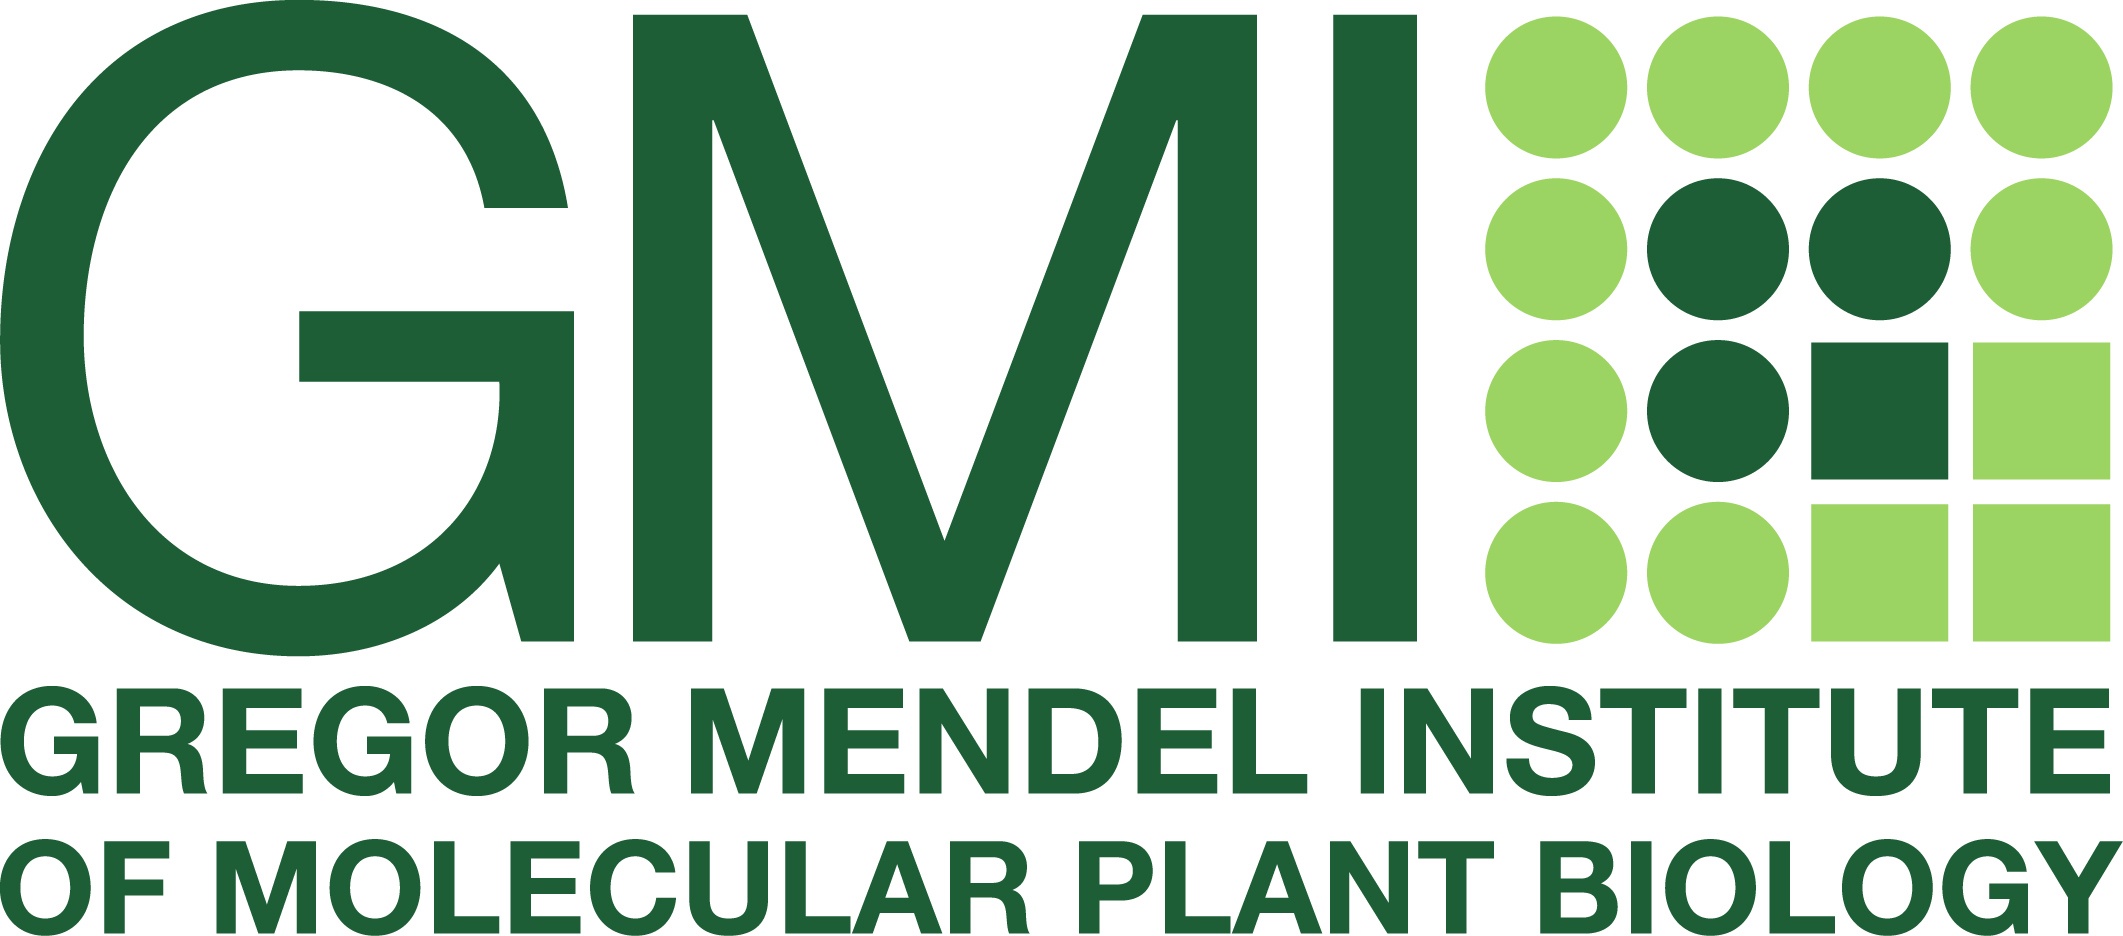 Gregor Mendel Institute of Molecular Plant Biology GmbH © Gregor Mendel Institute of Molecular Plant Biology GmbH